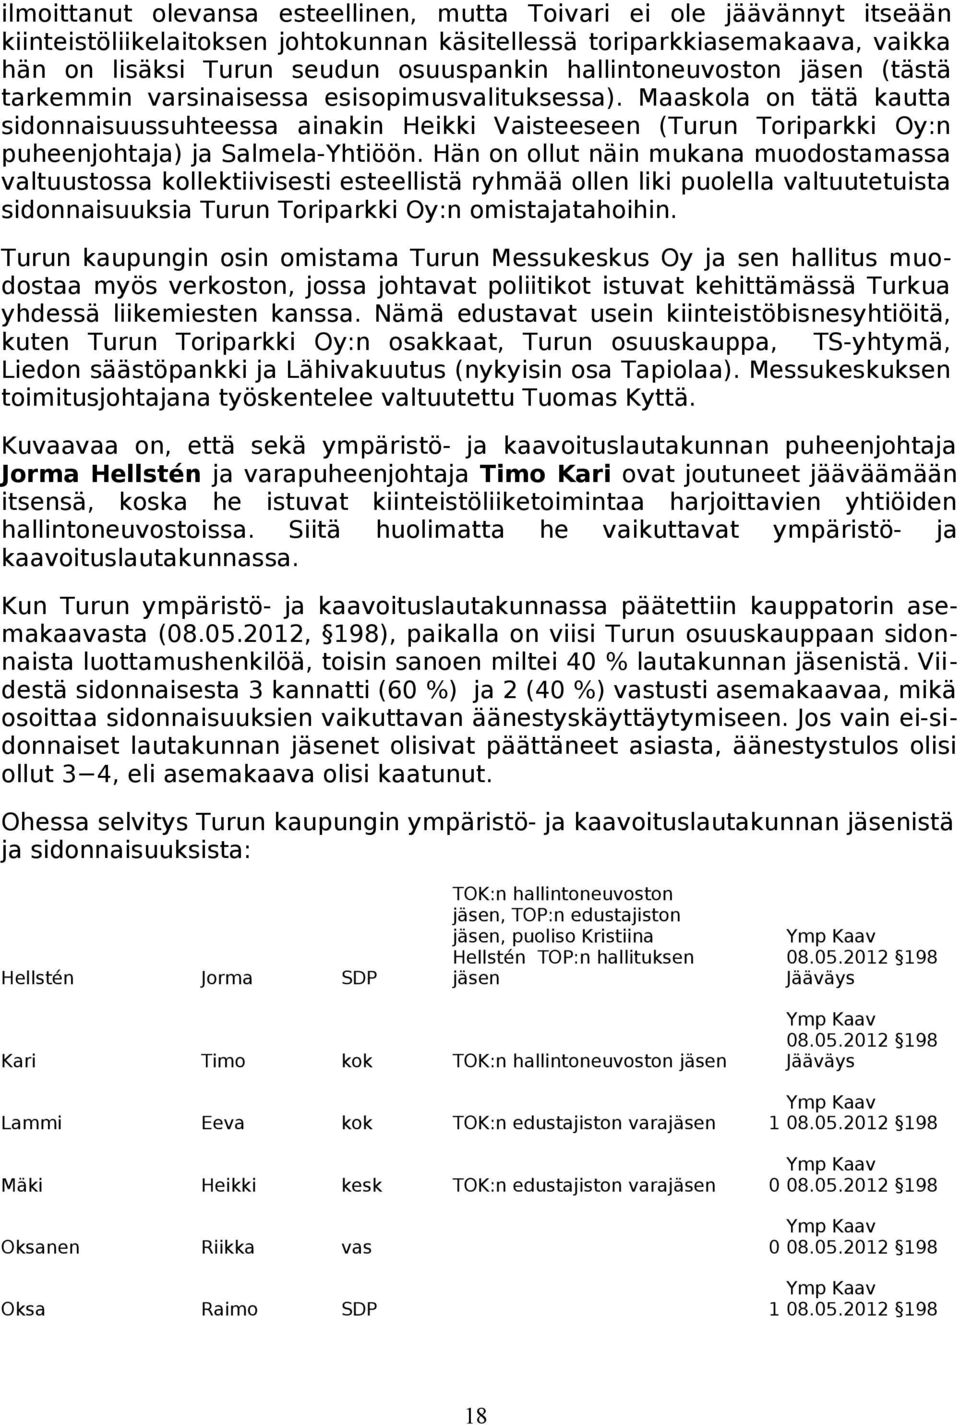 Maaskola on tätä kautta sidonnaisuussuhteessa ainakin Heikki Vaisteeseen (Turun Toriparkki Oy:n puheenjohtaja) ja Salmela-Yhtiöön.